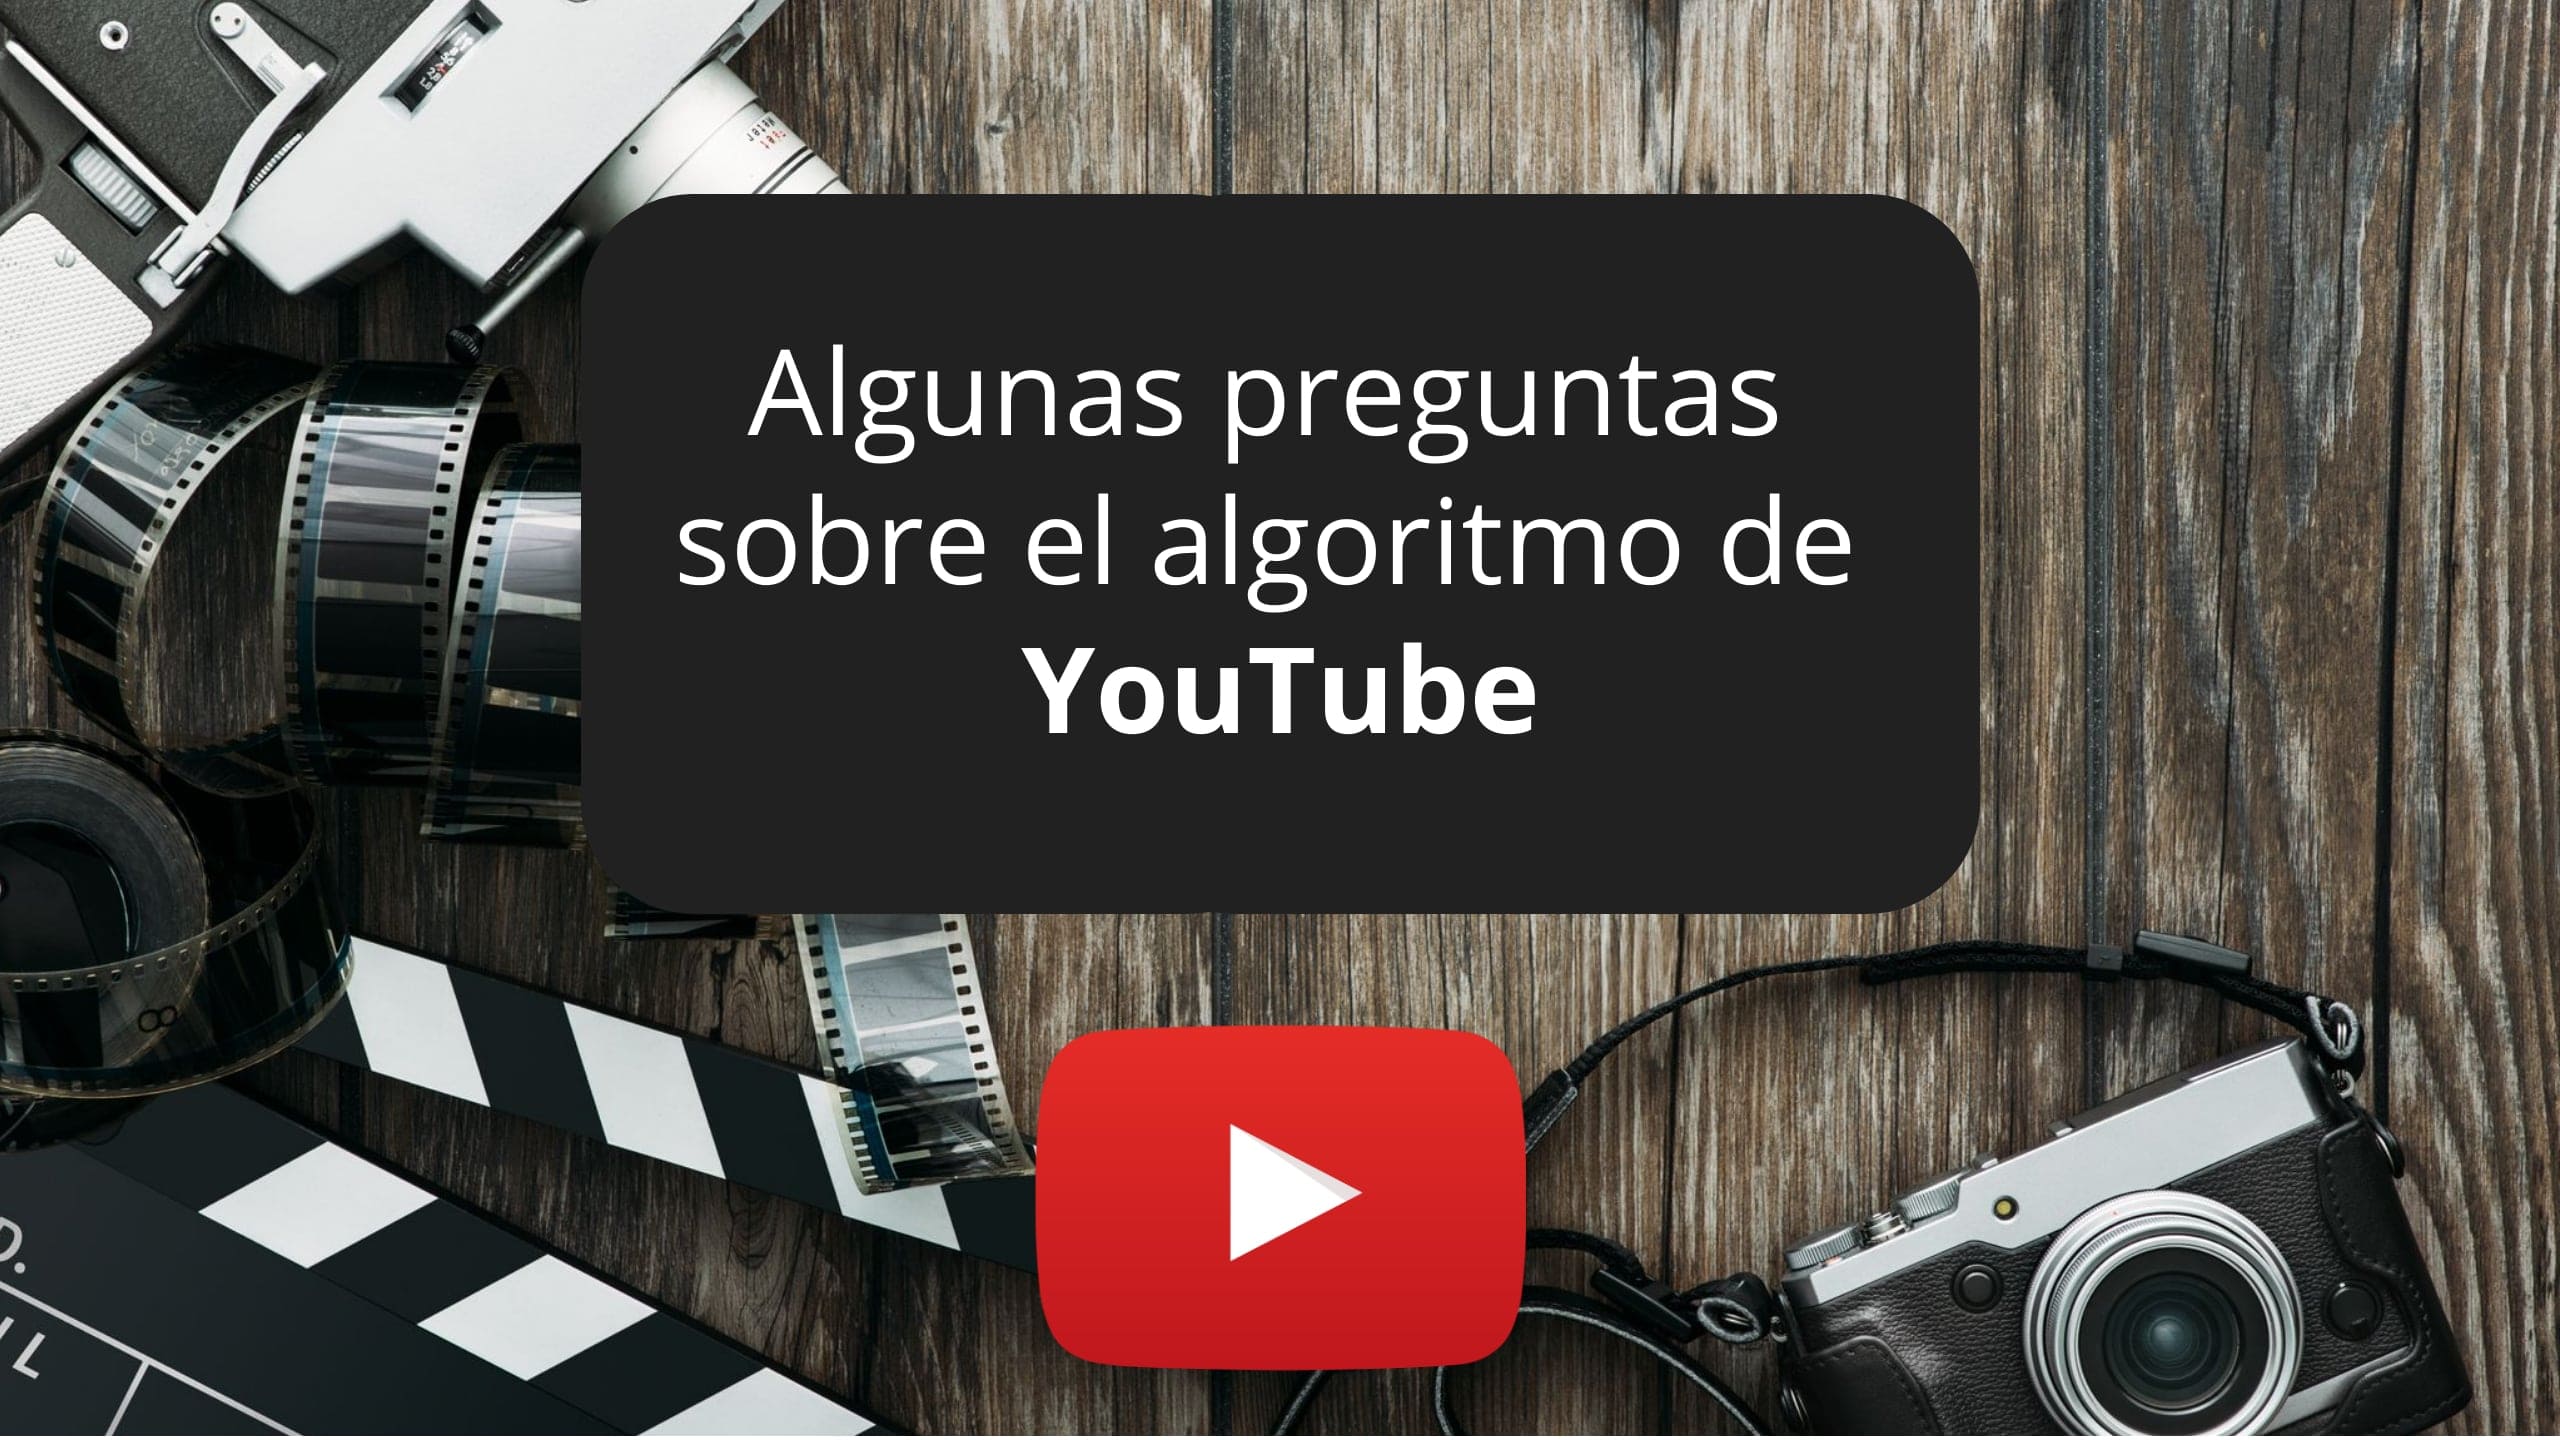 YouTube responde algunas preguntas sobre su algoritmo